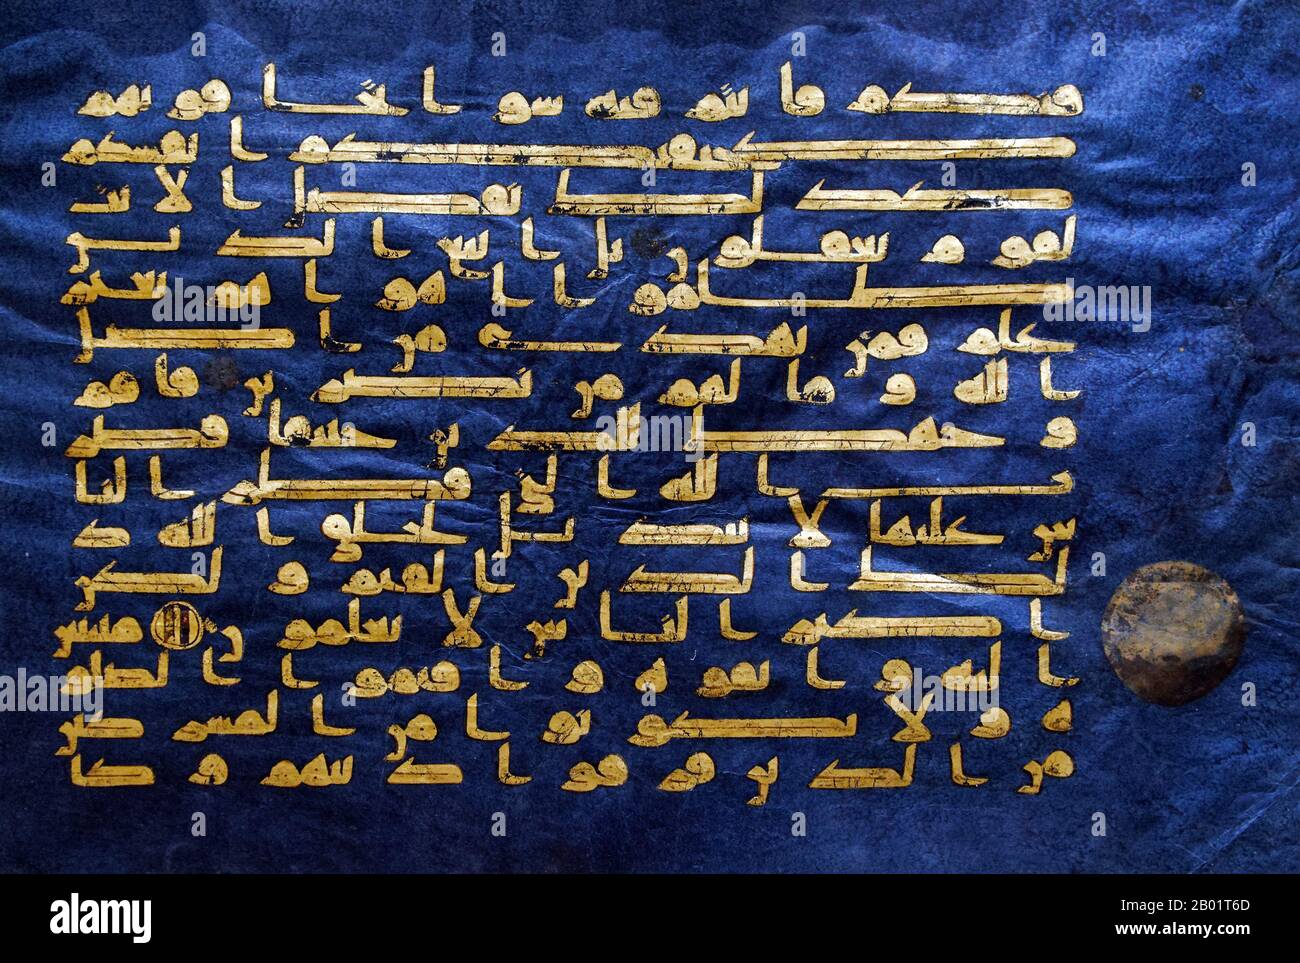 Tunesien: Surat Al-Rum („Sure der Römer“) in Kufik. Aus dem „Blauen Koran“, Qairawan, Tunesien, um 1000 n. Chr. Der Blaue Koran ist eine tunesische Koran-Manuskript aus dem späten 9. Bis frühen 10. Jahrhundert in kufischer Kalligraphie. Es ist in Gold geschrieben (Chrysographie) auf Pergament gestorben mit Indigo, ein einzigartiger Aspekt. Es gehört zu den berühmtesten Werken islamischer Kunst und wurde als „eines der außergewöhnlichsten Luxusmanuskripte aller Zeiten“ bezeichnet. Das Manuskript wurde während der Osmanischen Zeit verstreut; heute befindet sich das meiste im Nationalen Institut für Kunst und Archäologie in Tunis. Stockfoto